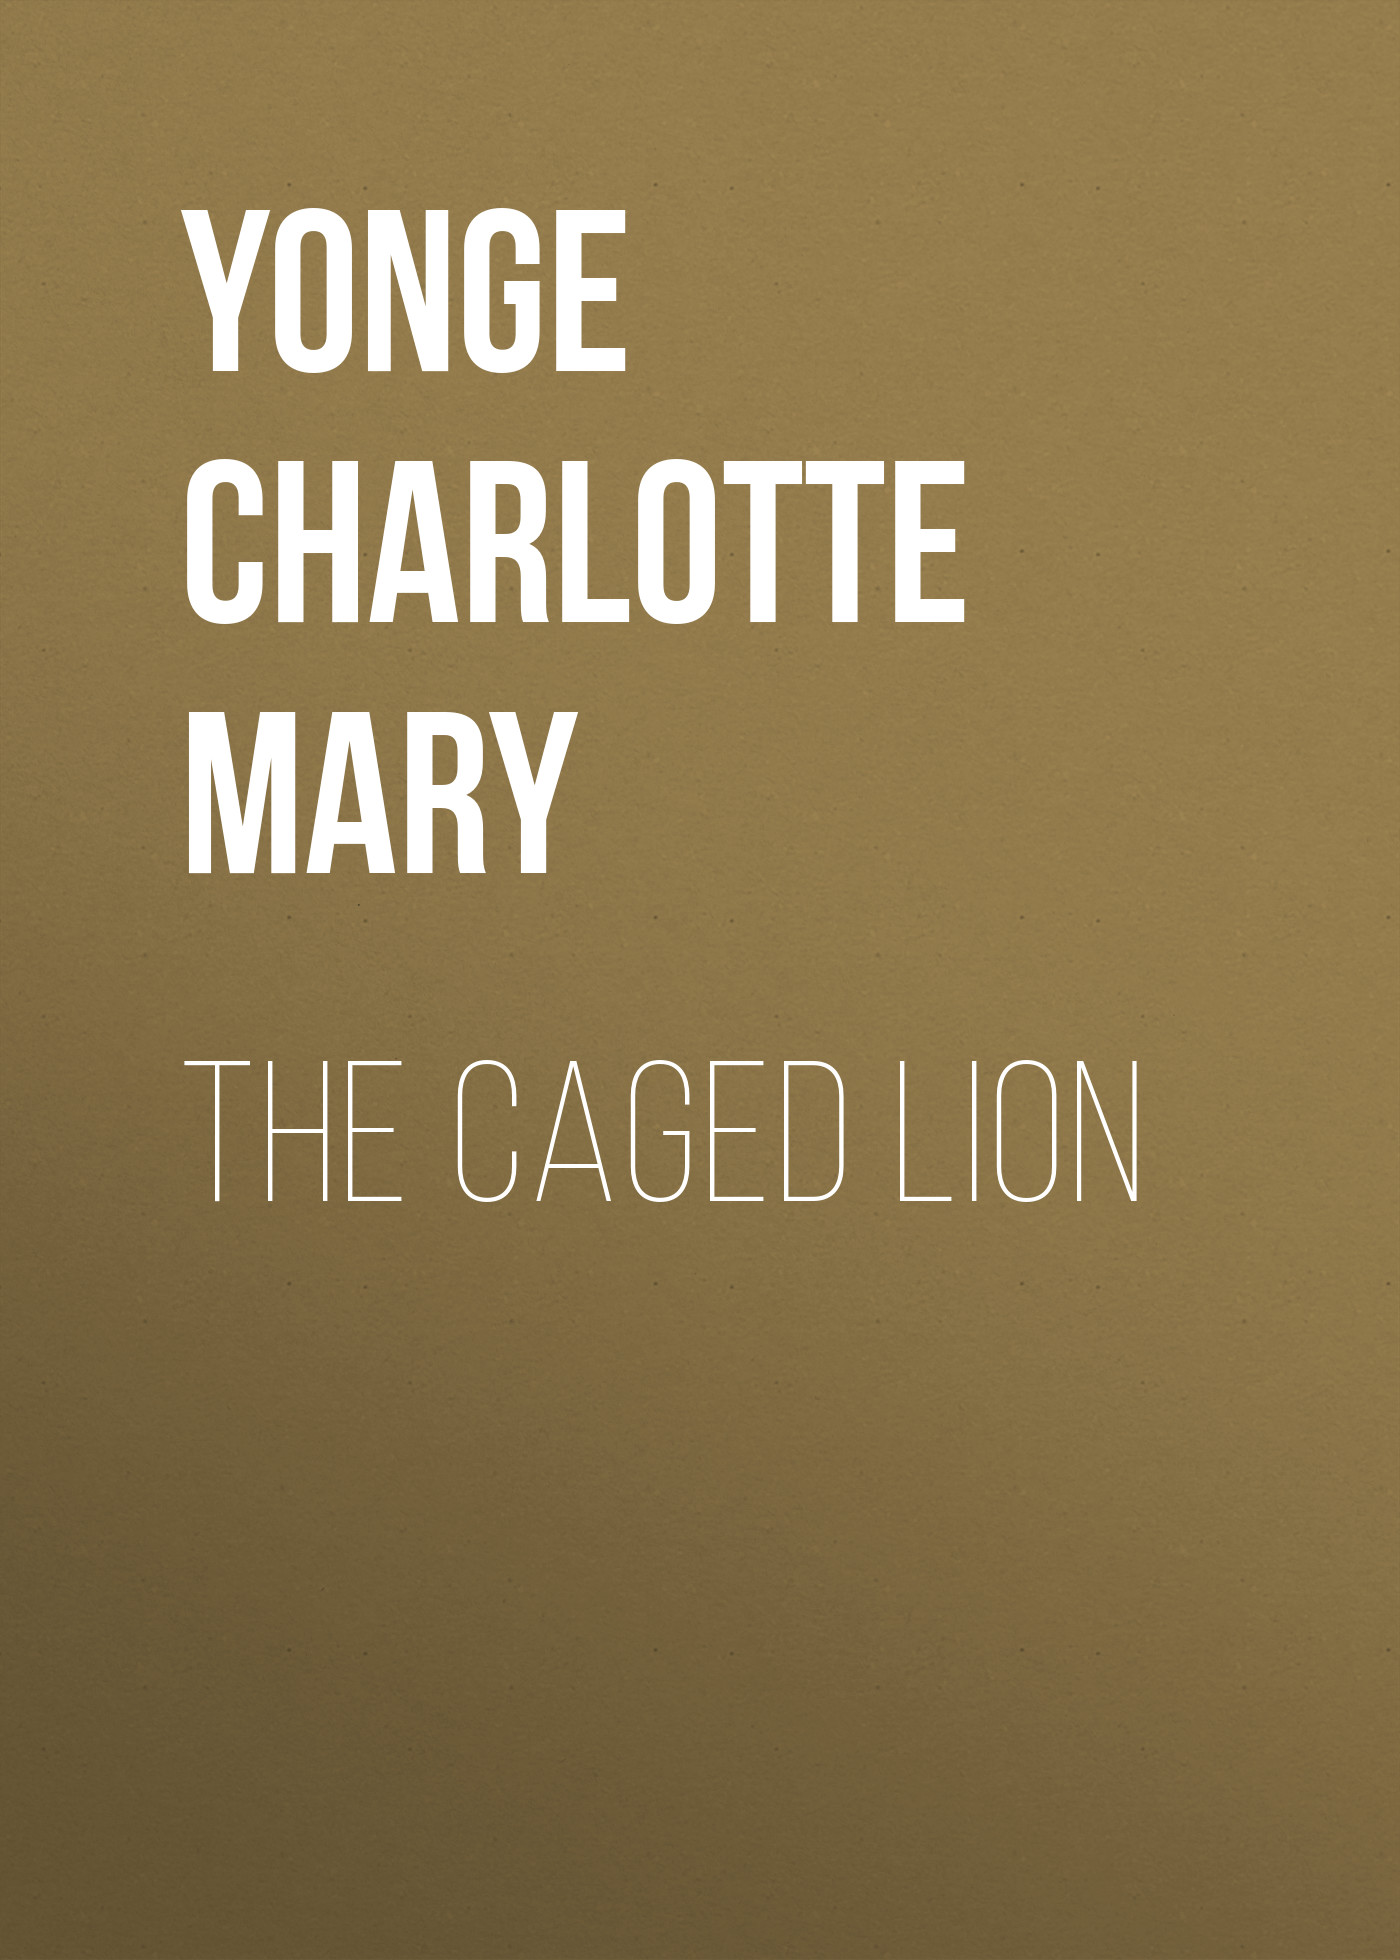 Книга The Caged Lion из серии , созданная Charlotte Yonge, может относится к жанру Зарубежная классика, Литература 19 века, Европейская старинная литература, Зарубежная старинная литература. Стоимость электронной книги The Caged Lion с идентификатором 36095085 составляет 0 руб.